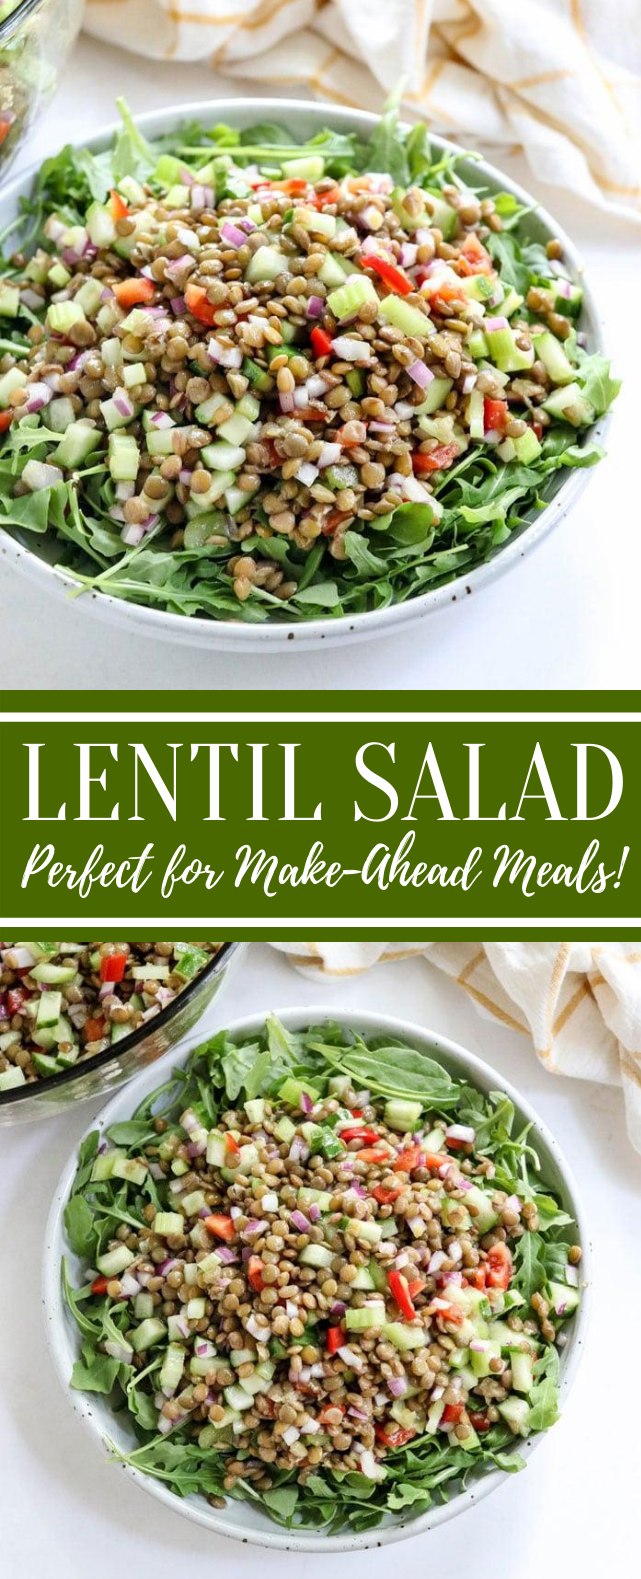 Lentil Salad (Perfect for Make-Ahead Meals!) #vegetarian #veggies #salad #vegetables #lunch